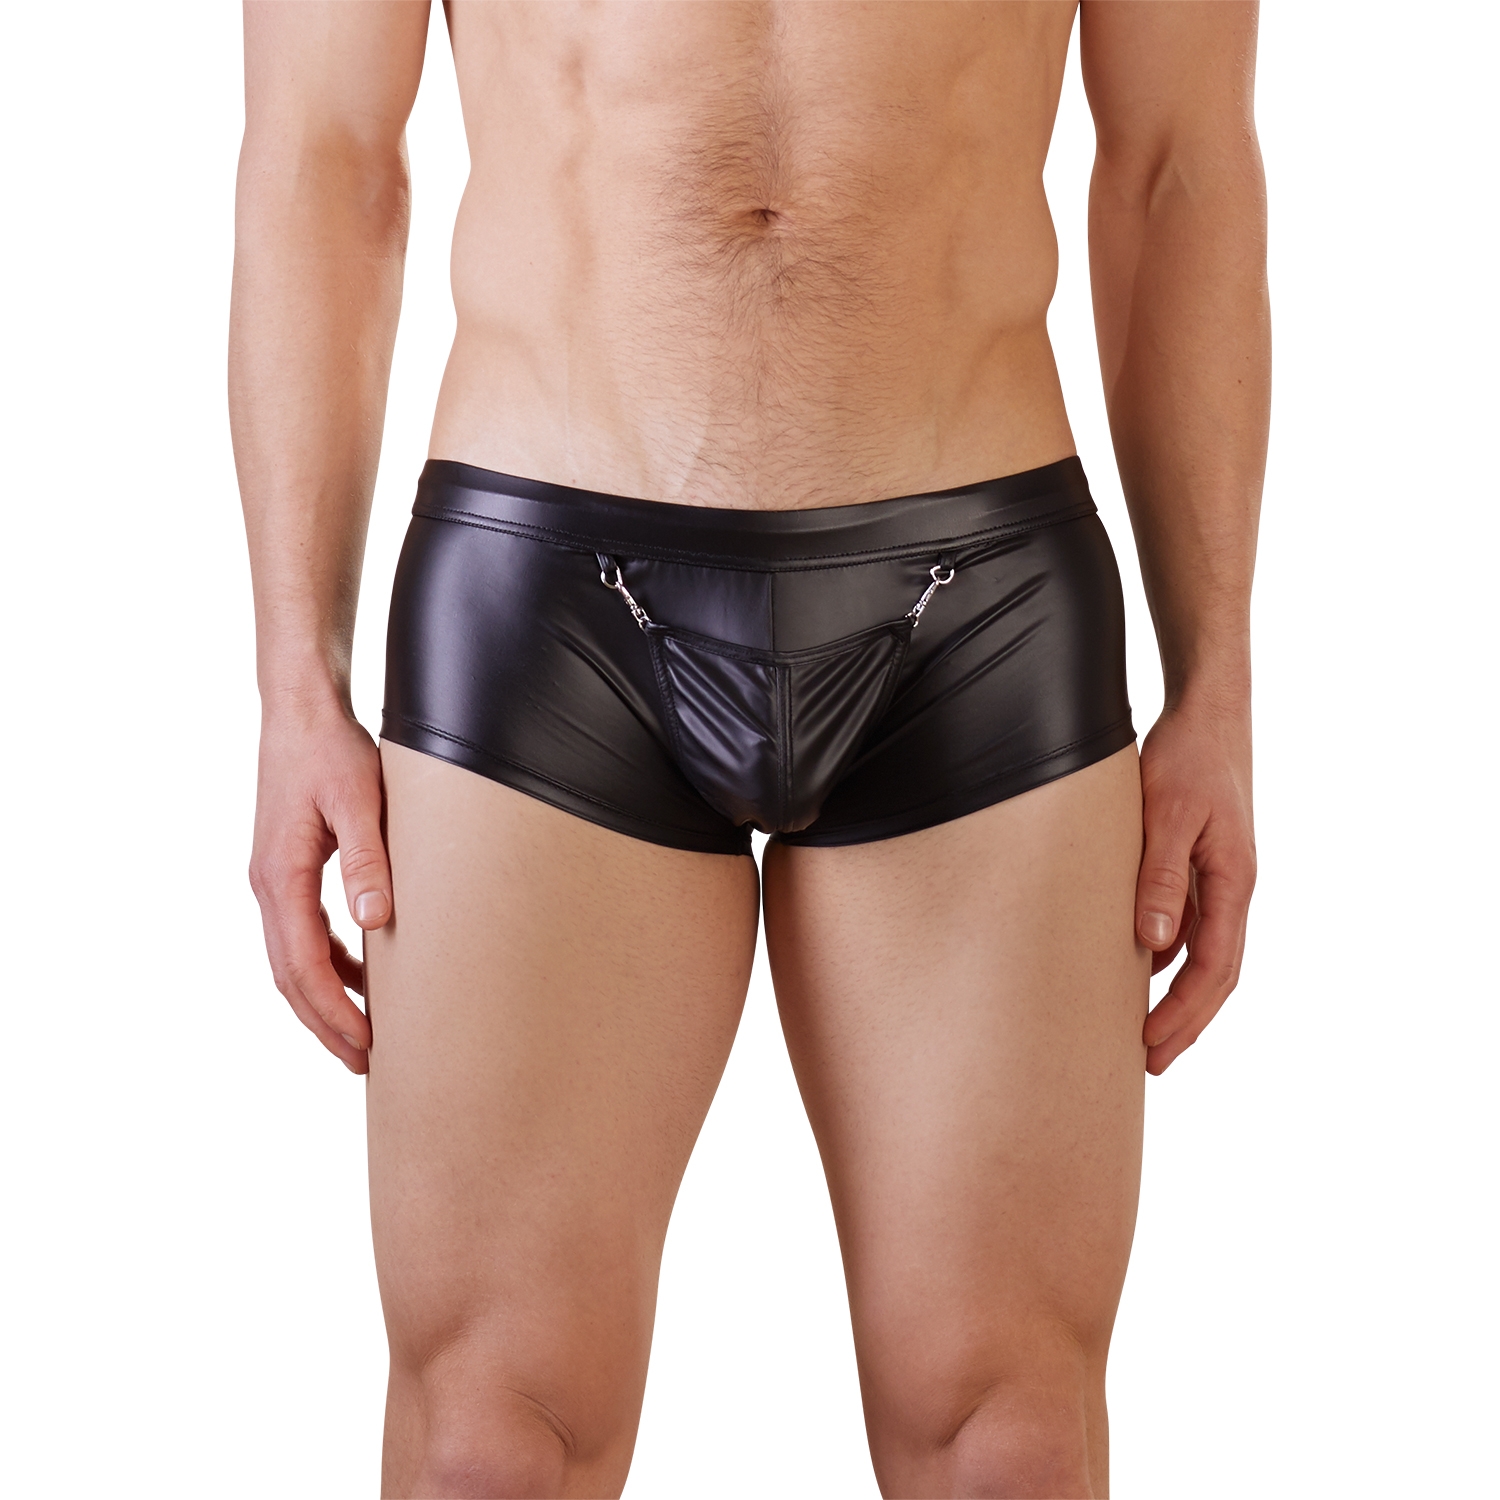 NEK Wetlook Boxer Shorts - Black - L